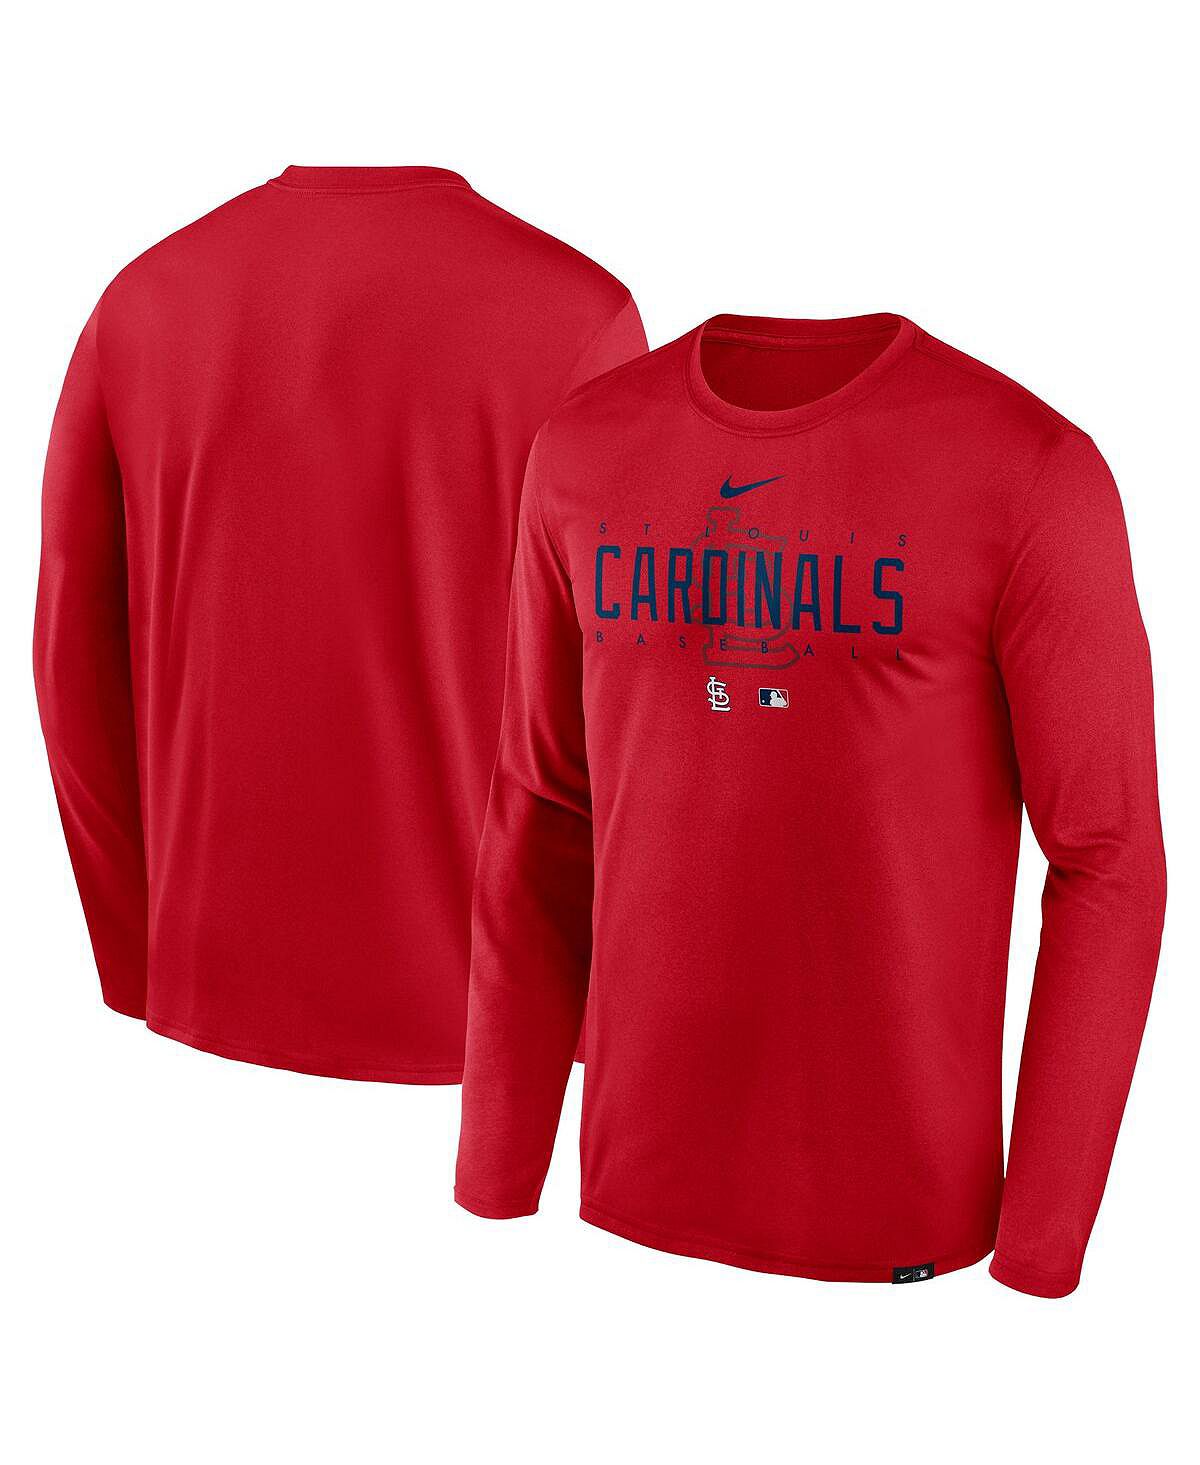 Мужская красная футболка с длинным рукавом с логотипом команды St. Louis Cardinals Authentic Collection Legend Performance Nike цена и фото